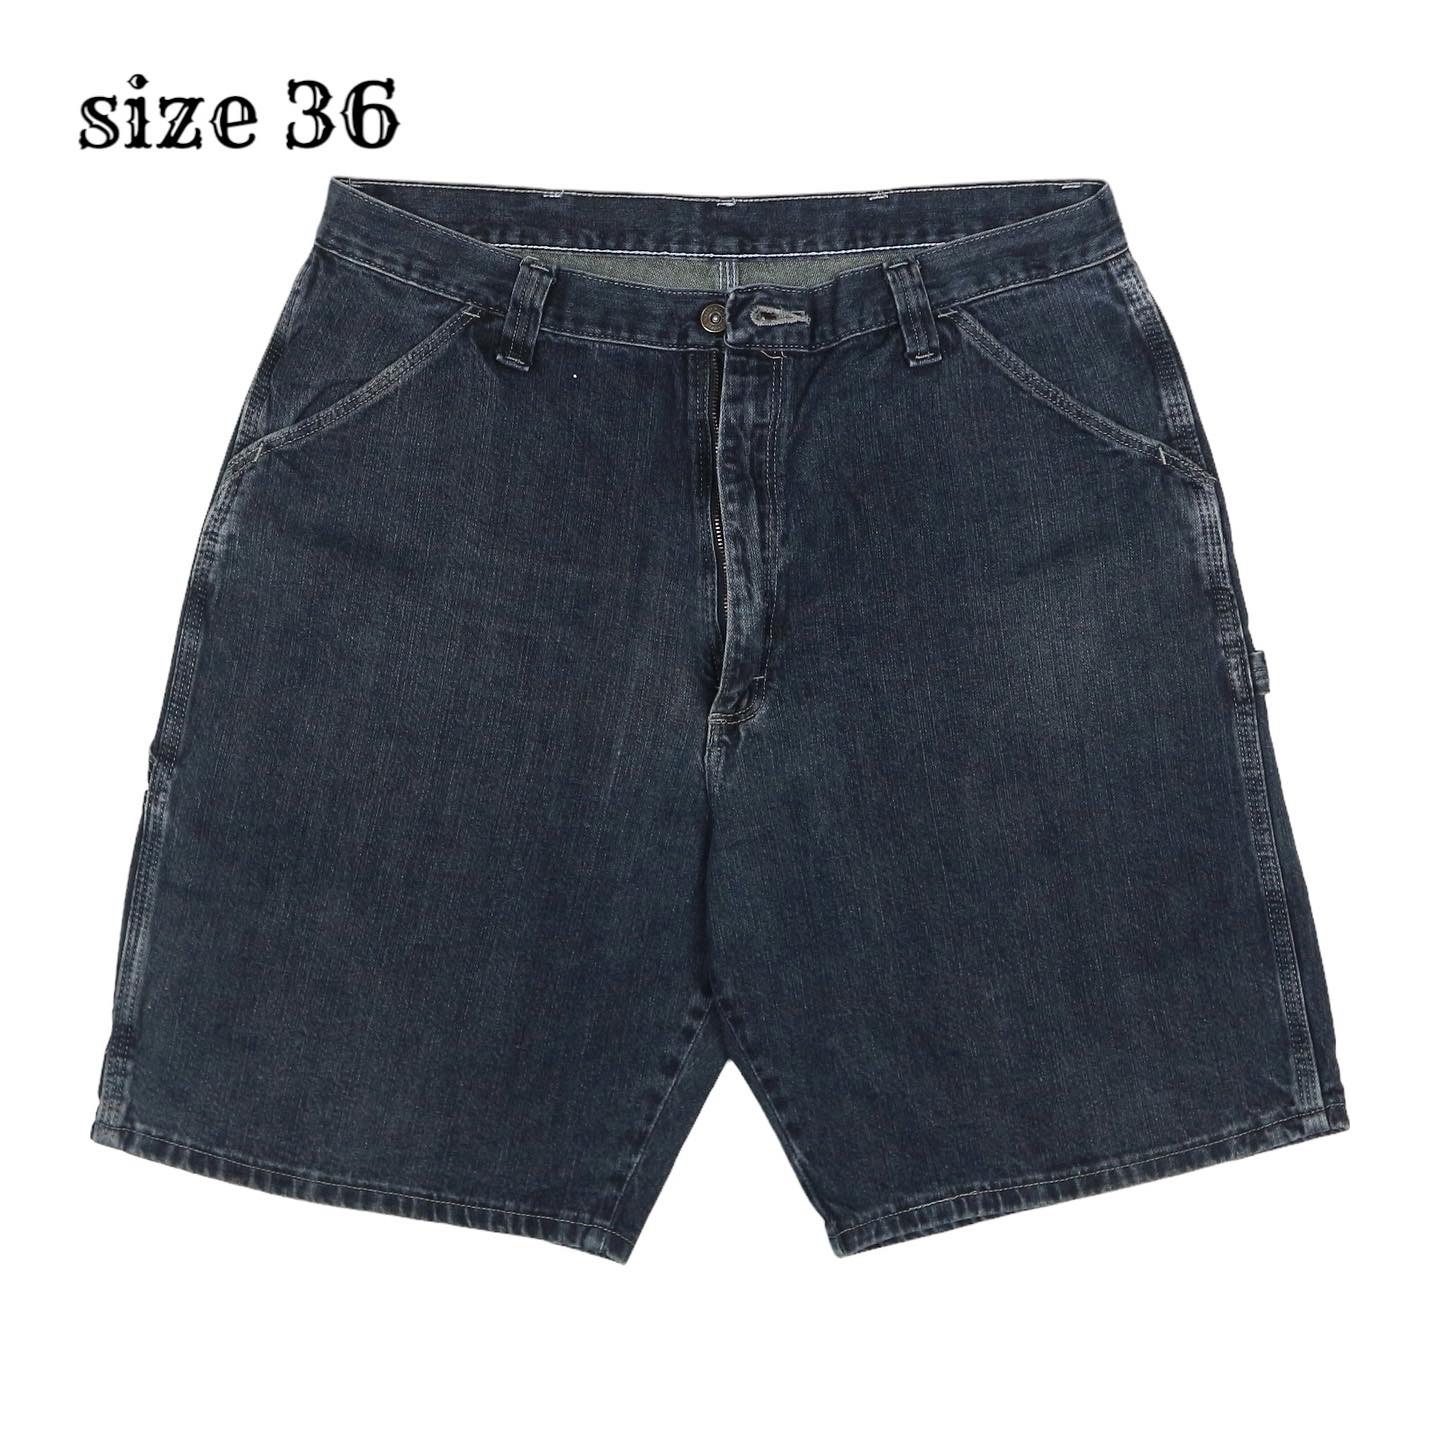 Wrangler Denim Carpenter Shorts Size 36